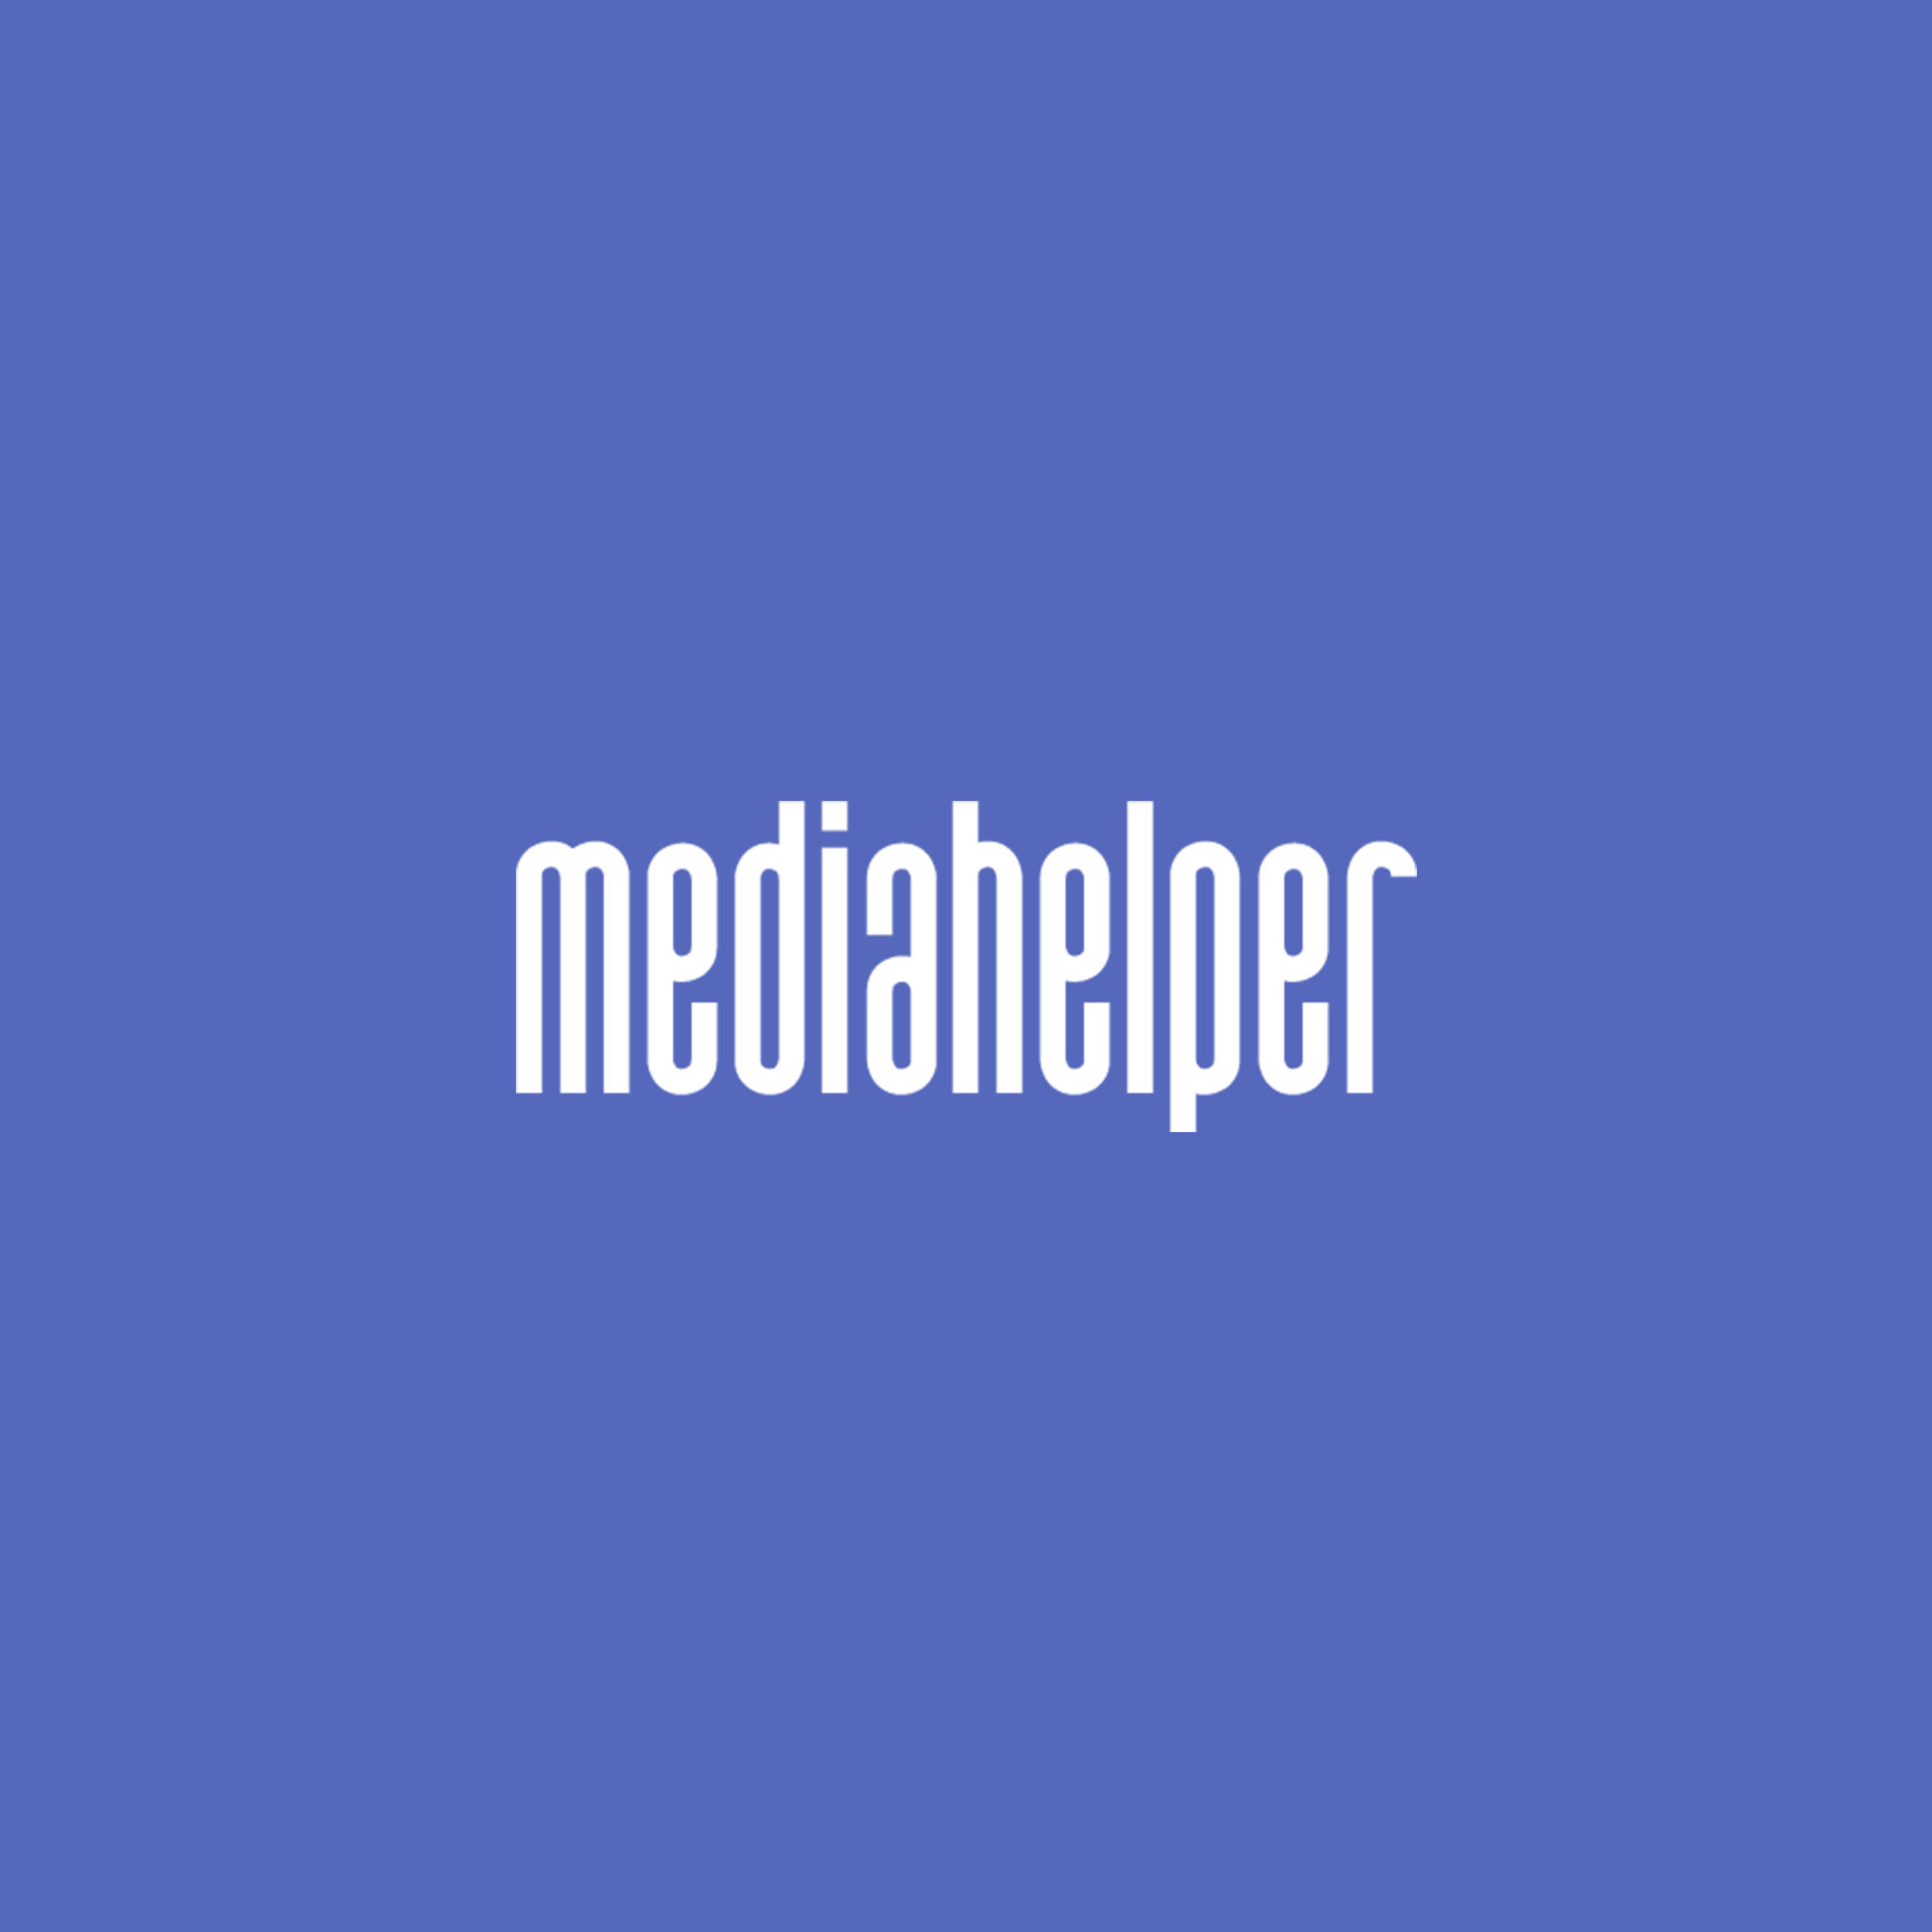 Mediahelper for Churches